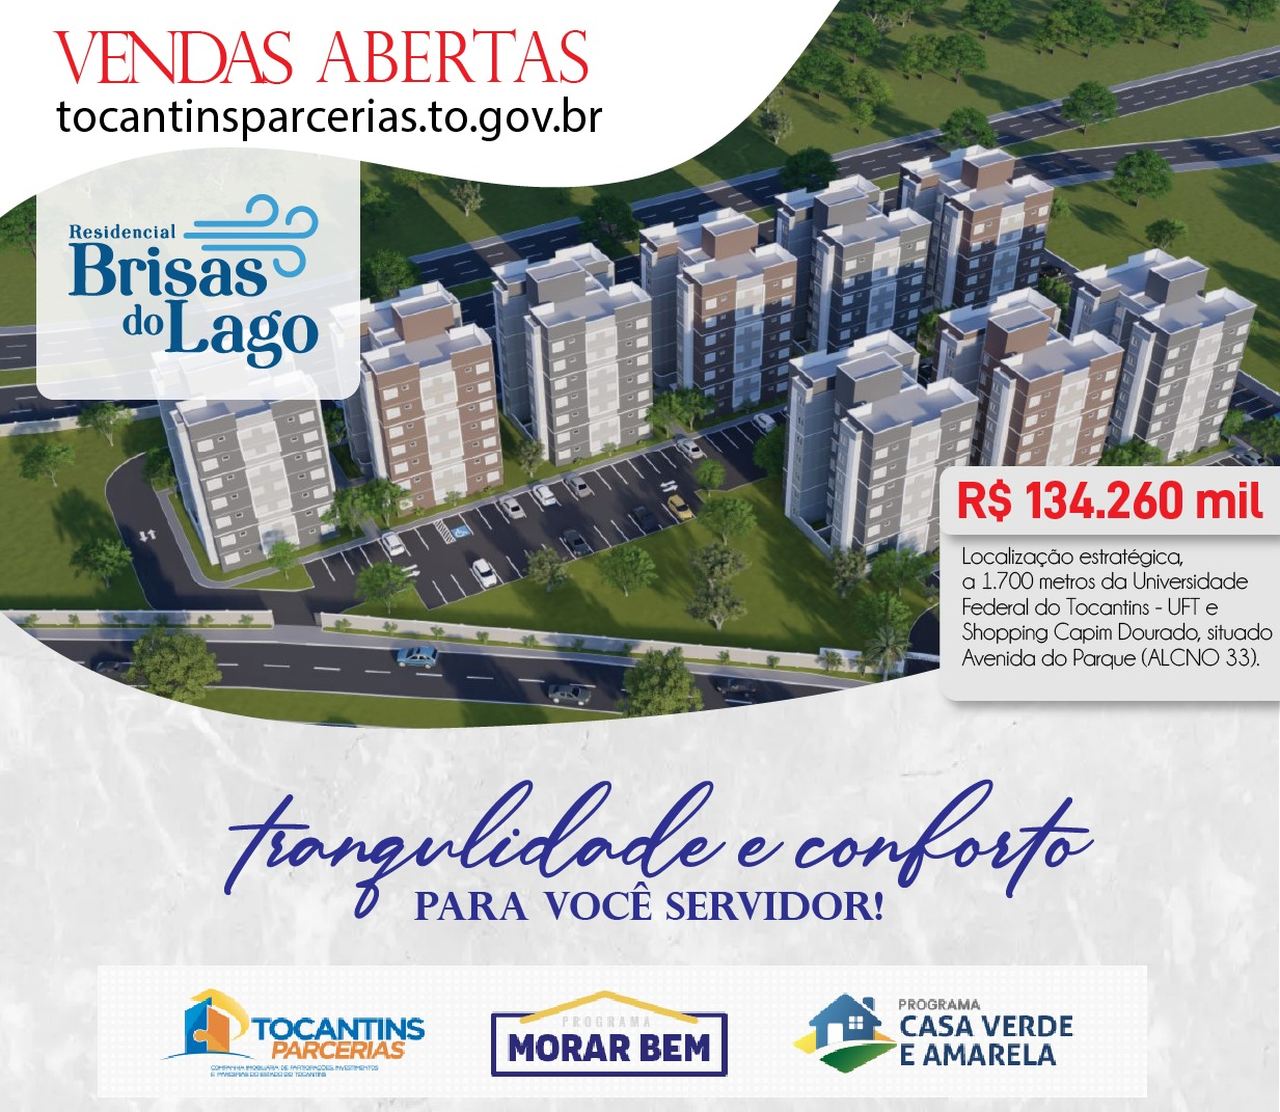 Programa Morar Bem: governo estadual inicia vendas de apartamentos com preços acessíveis em Palmas